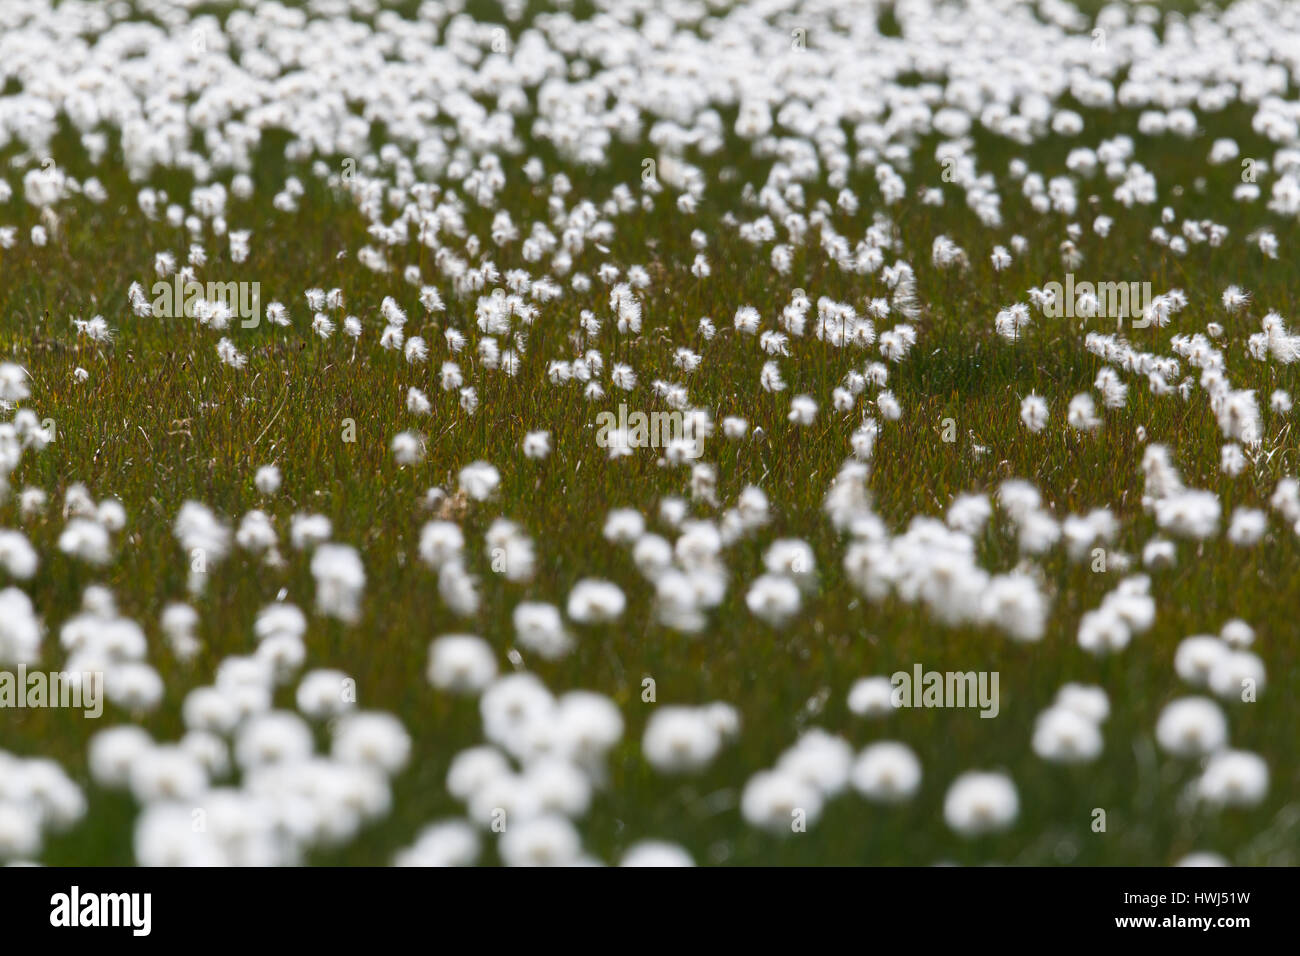 Domaine de la linaigrette (Eriophorum naturelles en fleurs) au sein de l'herbe verte Banque D'Images